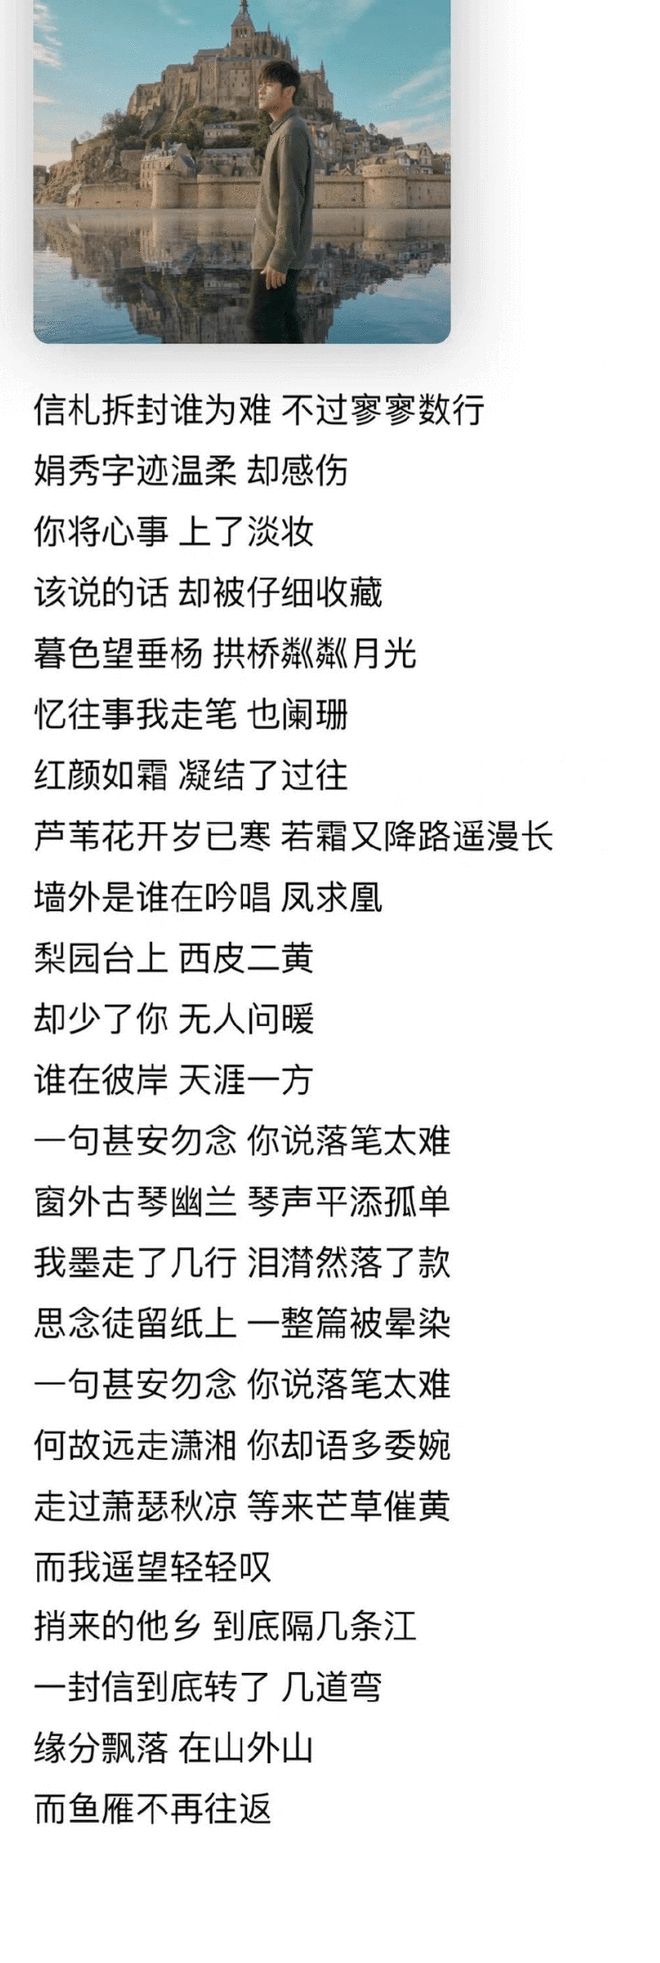 周杰伦新专辑提前上线引惊喜 中国风歌曲广受好评-